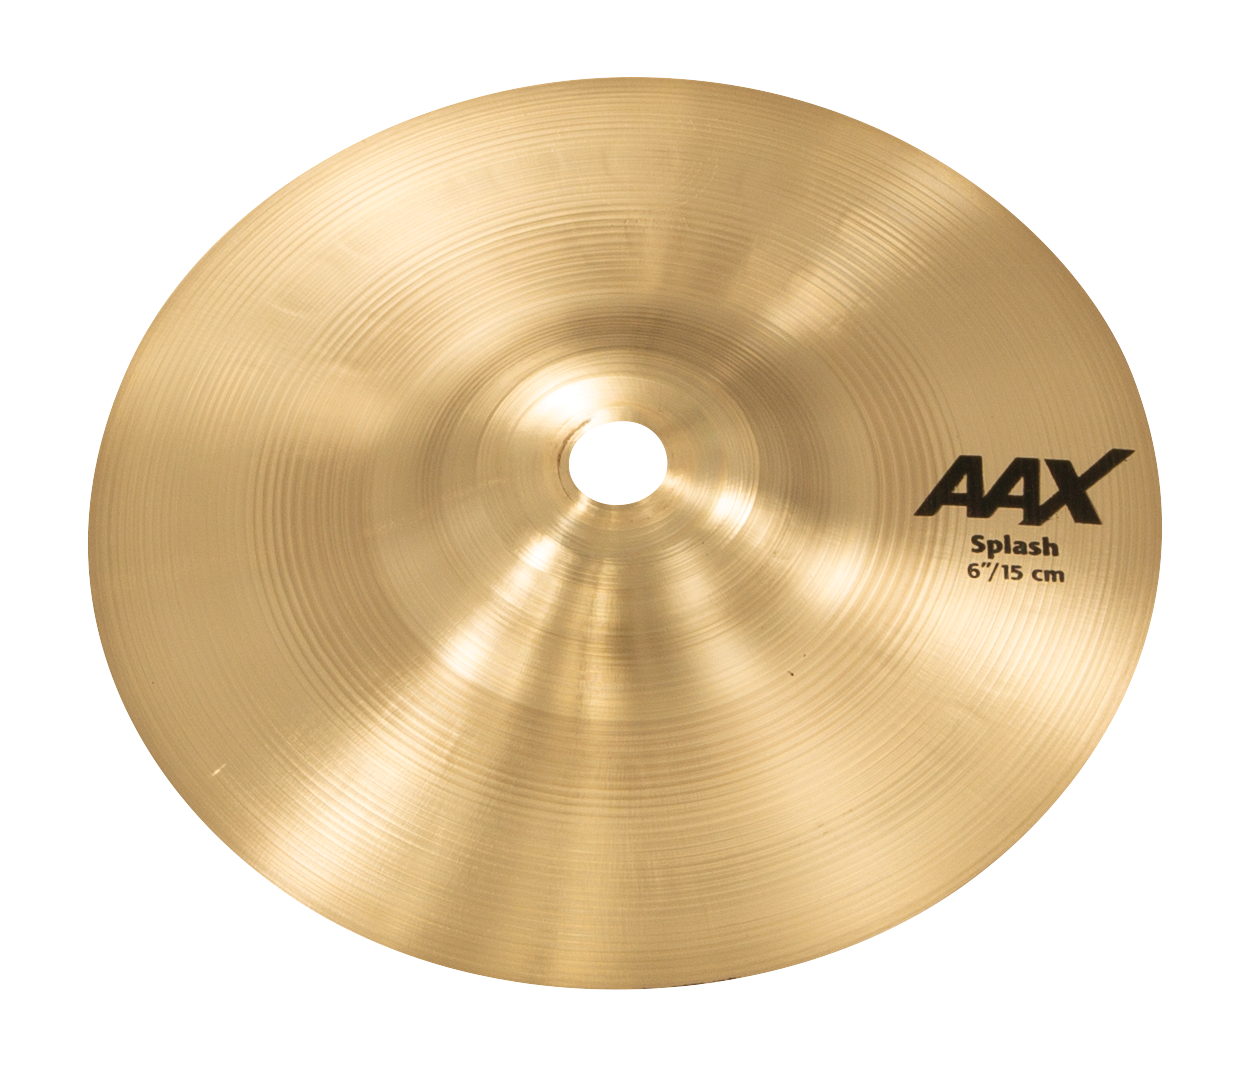 SABIAN 20605X 6" AAX Splash Cymbal